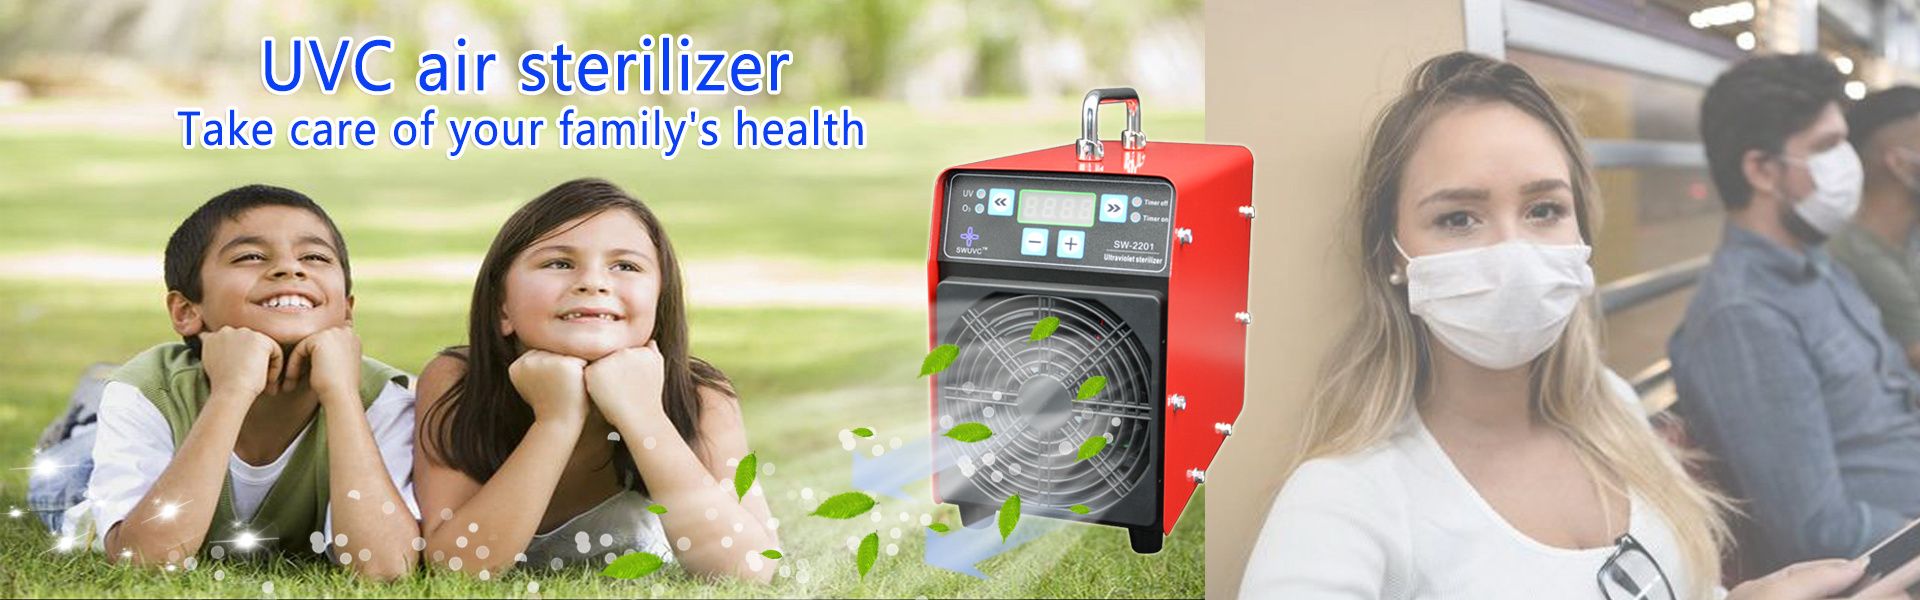 sterylizacja ultrafioletowa, oczyszczacz powietrza uvc, nowości COVID19,Dongguan 3d Health Technology Co., LTD